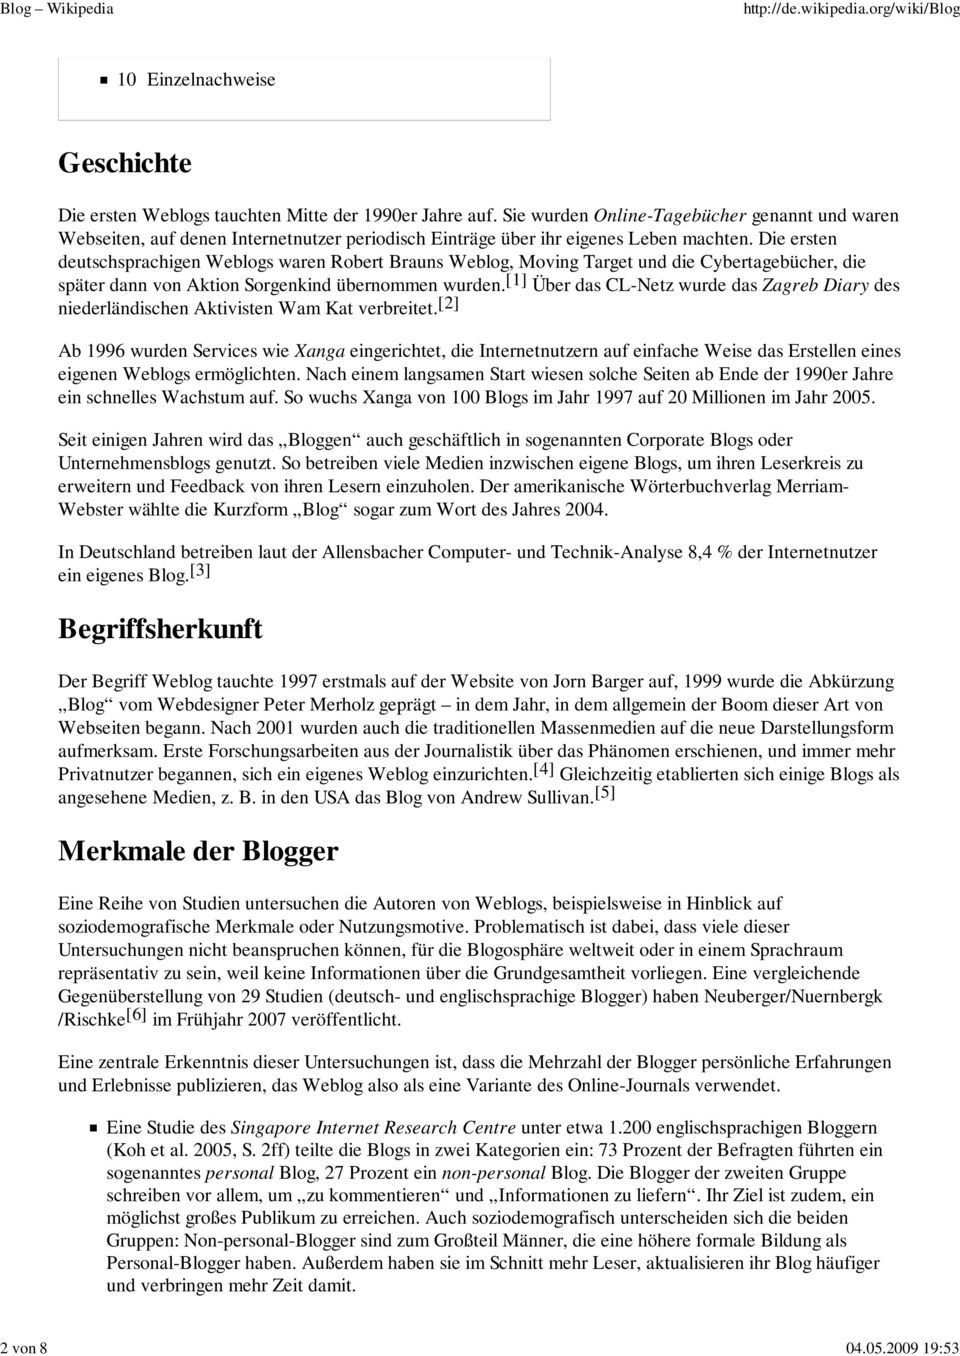 Die ersten deutschsprachigen Weblogs waren Robert Brauns Weblog, Moving Target und die Cybertagebücher, die später dann von Aktion Sorgenkind übernommen wurden.